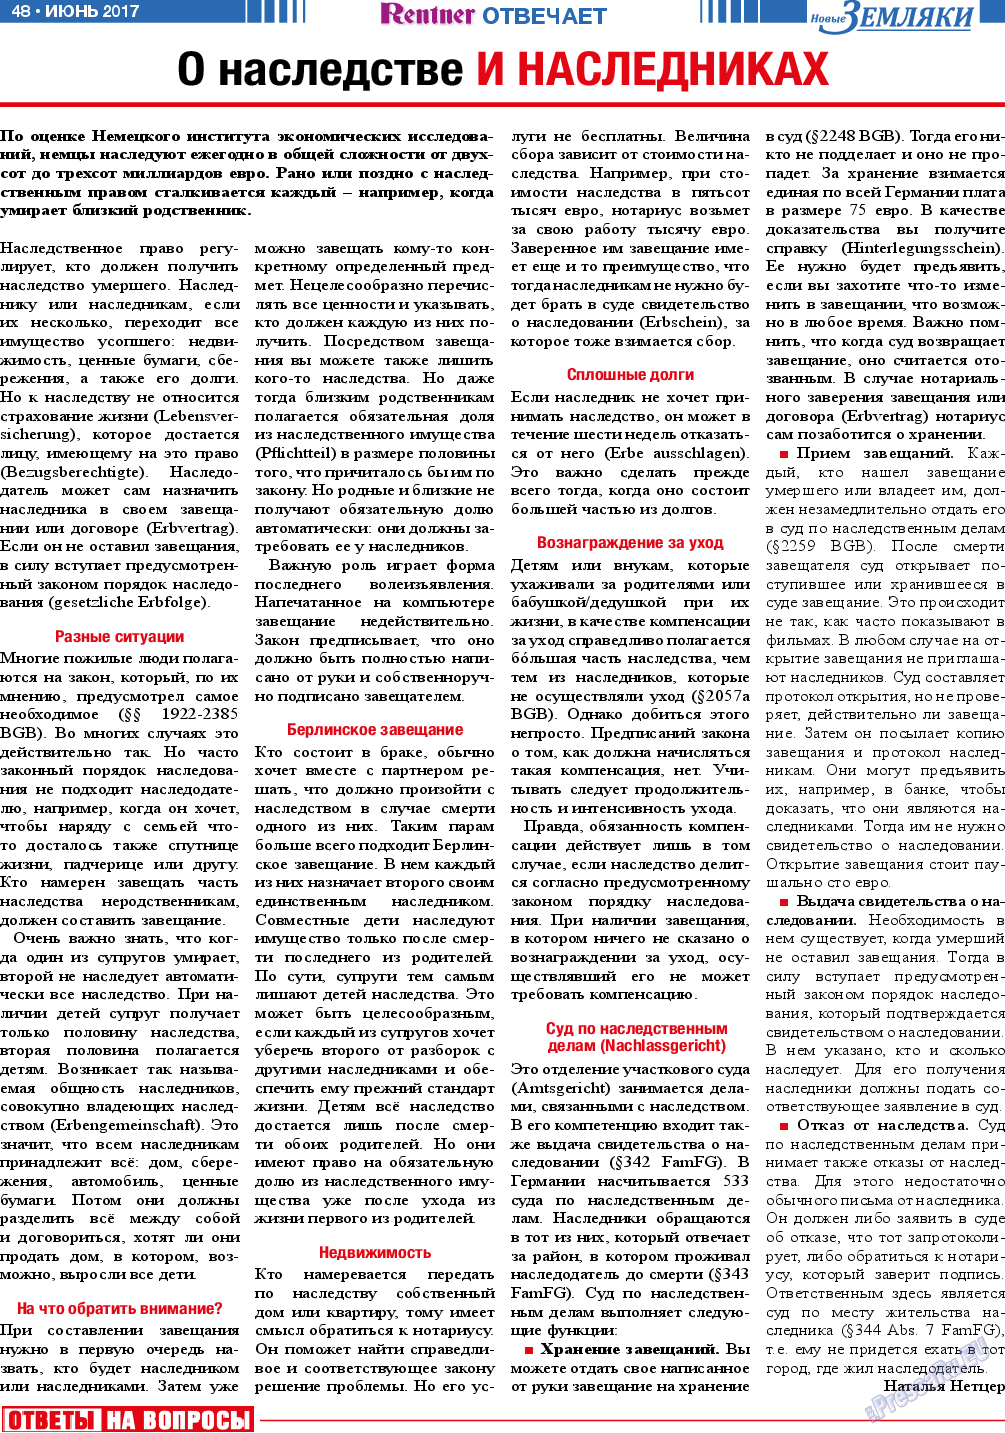 Новые Земляки, газета. 2017 №6 стр.48